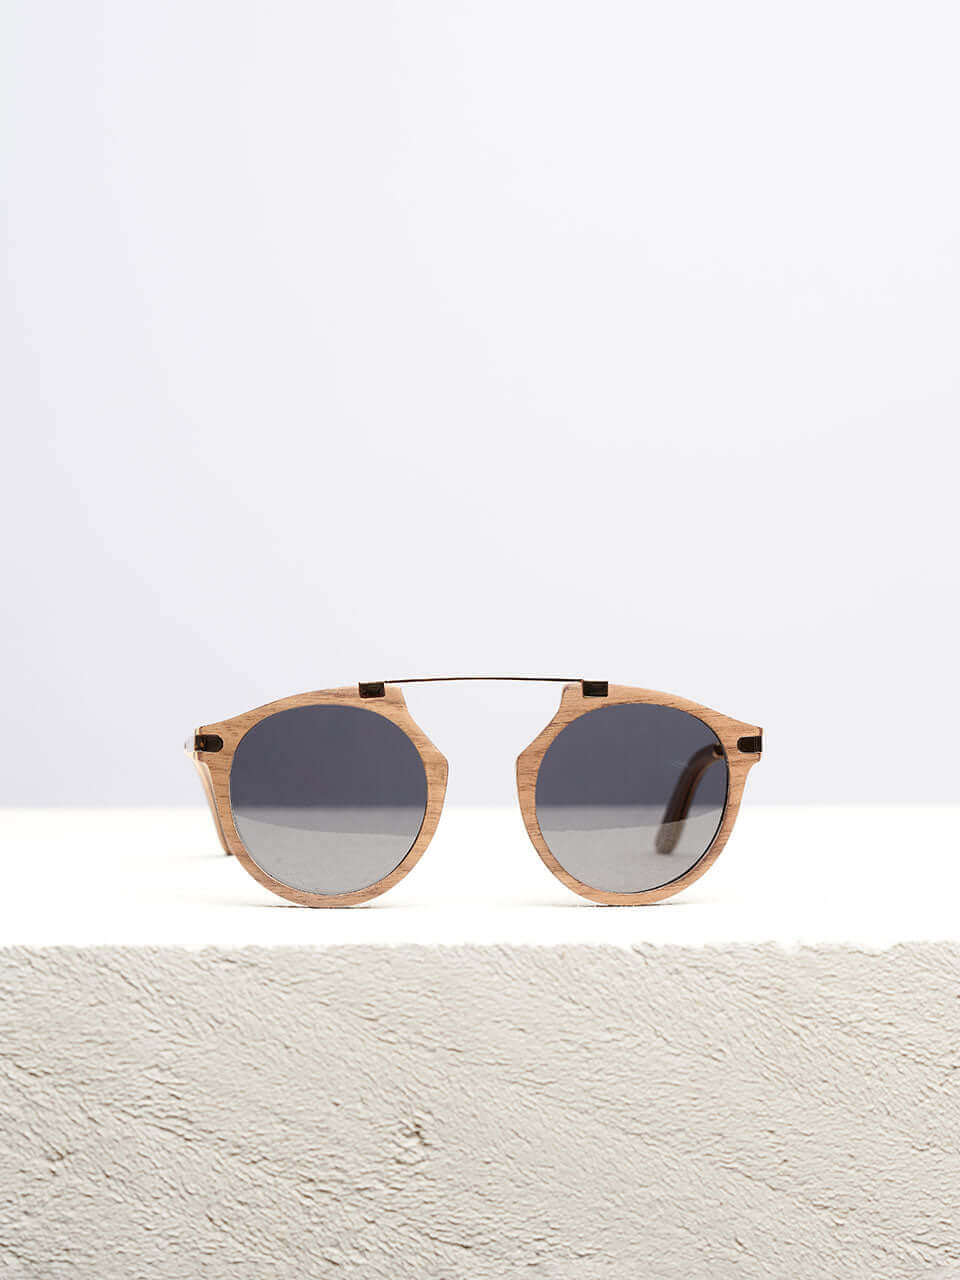 Santa Monica - Wooden Sunglasses for Women